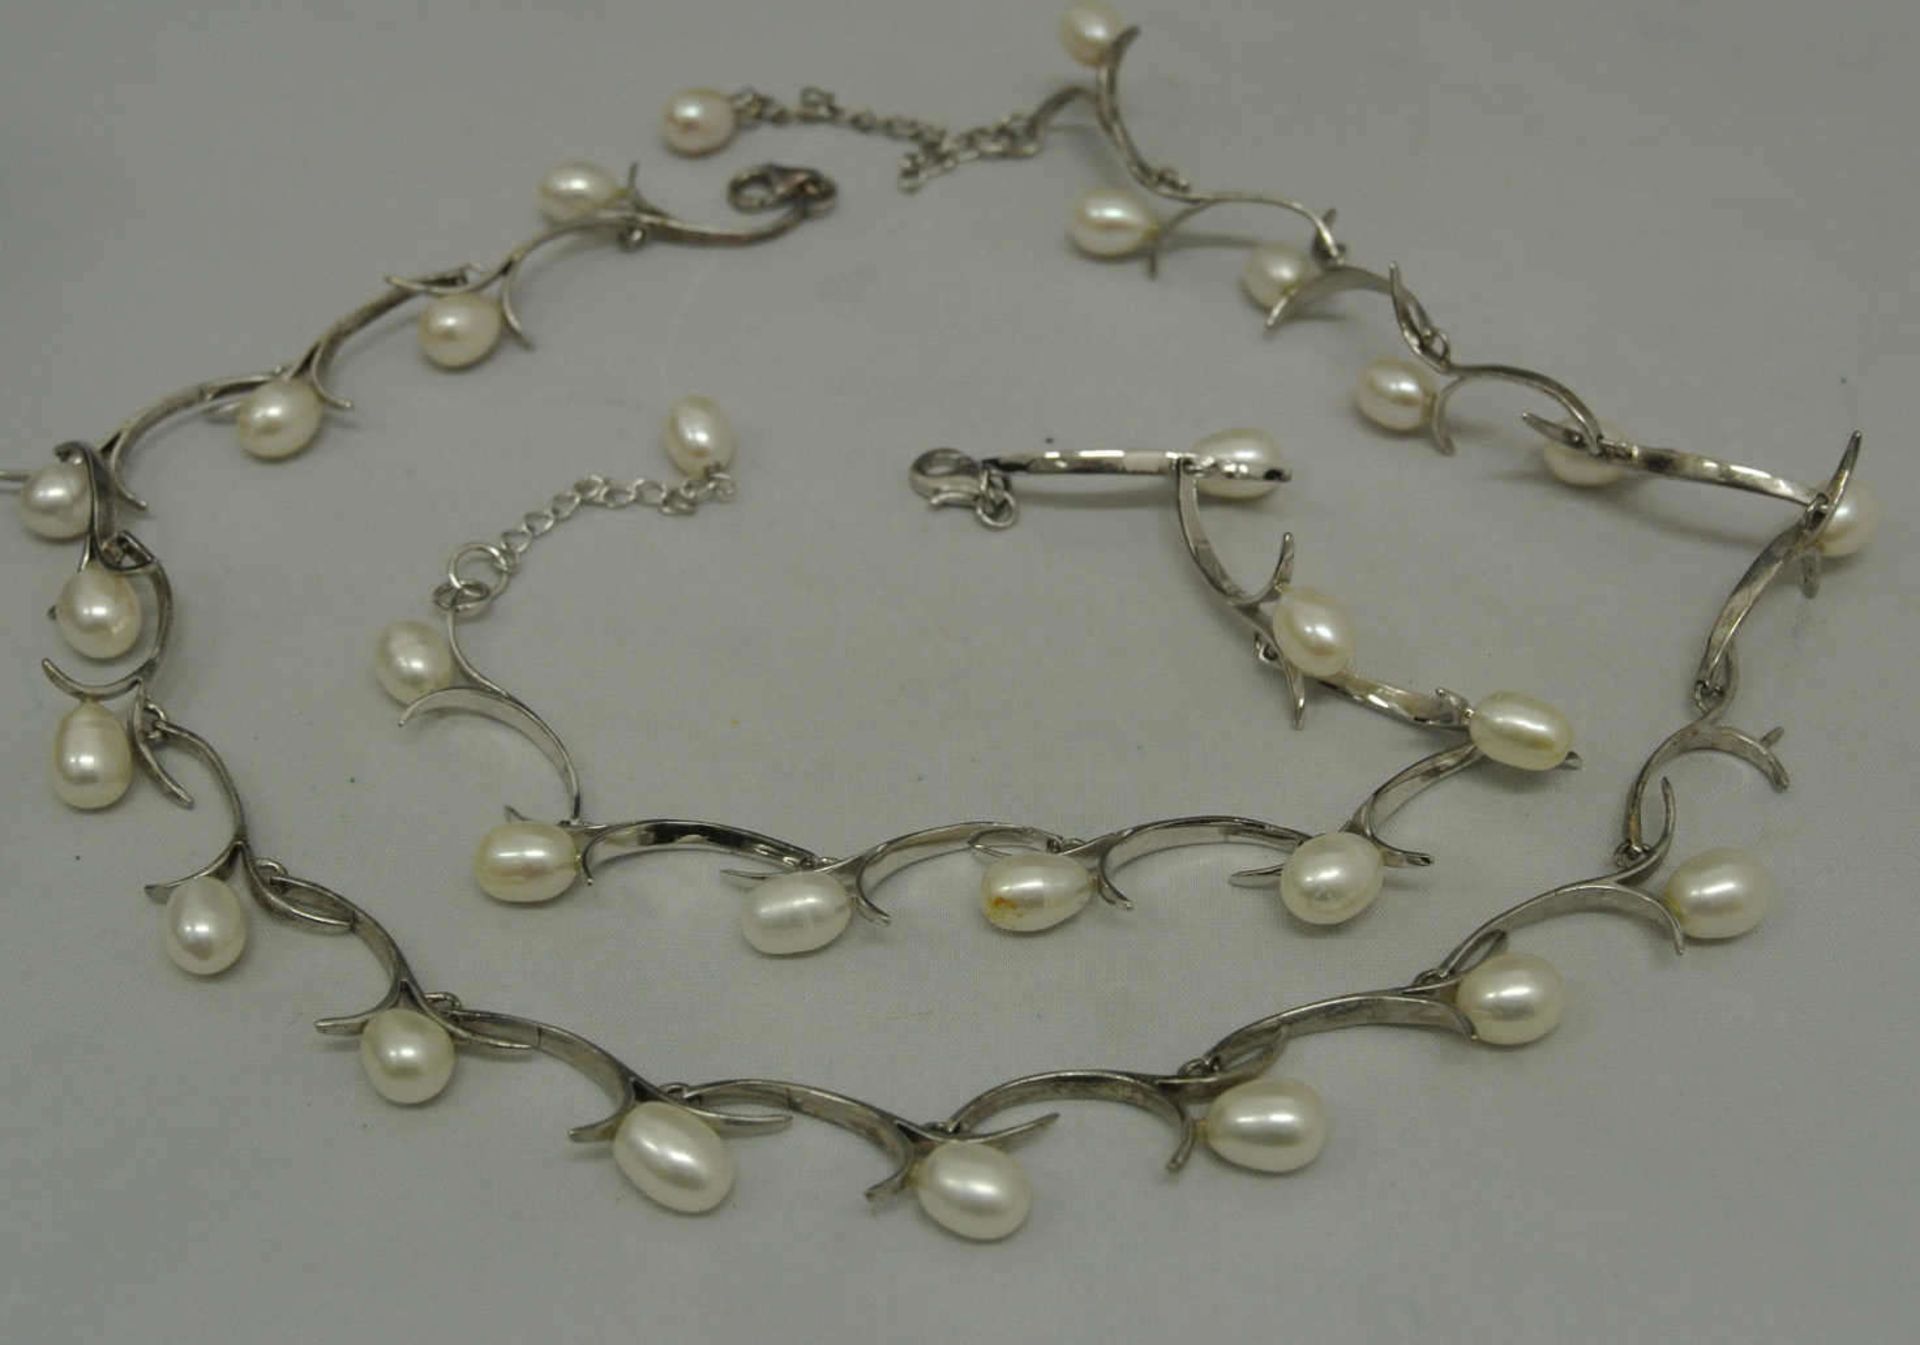 Set bestehend aus 1 Kette und passendem Armband. Beide 925er Silber mit Perlen besetzt. Bei der